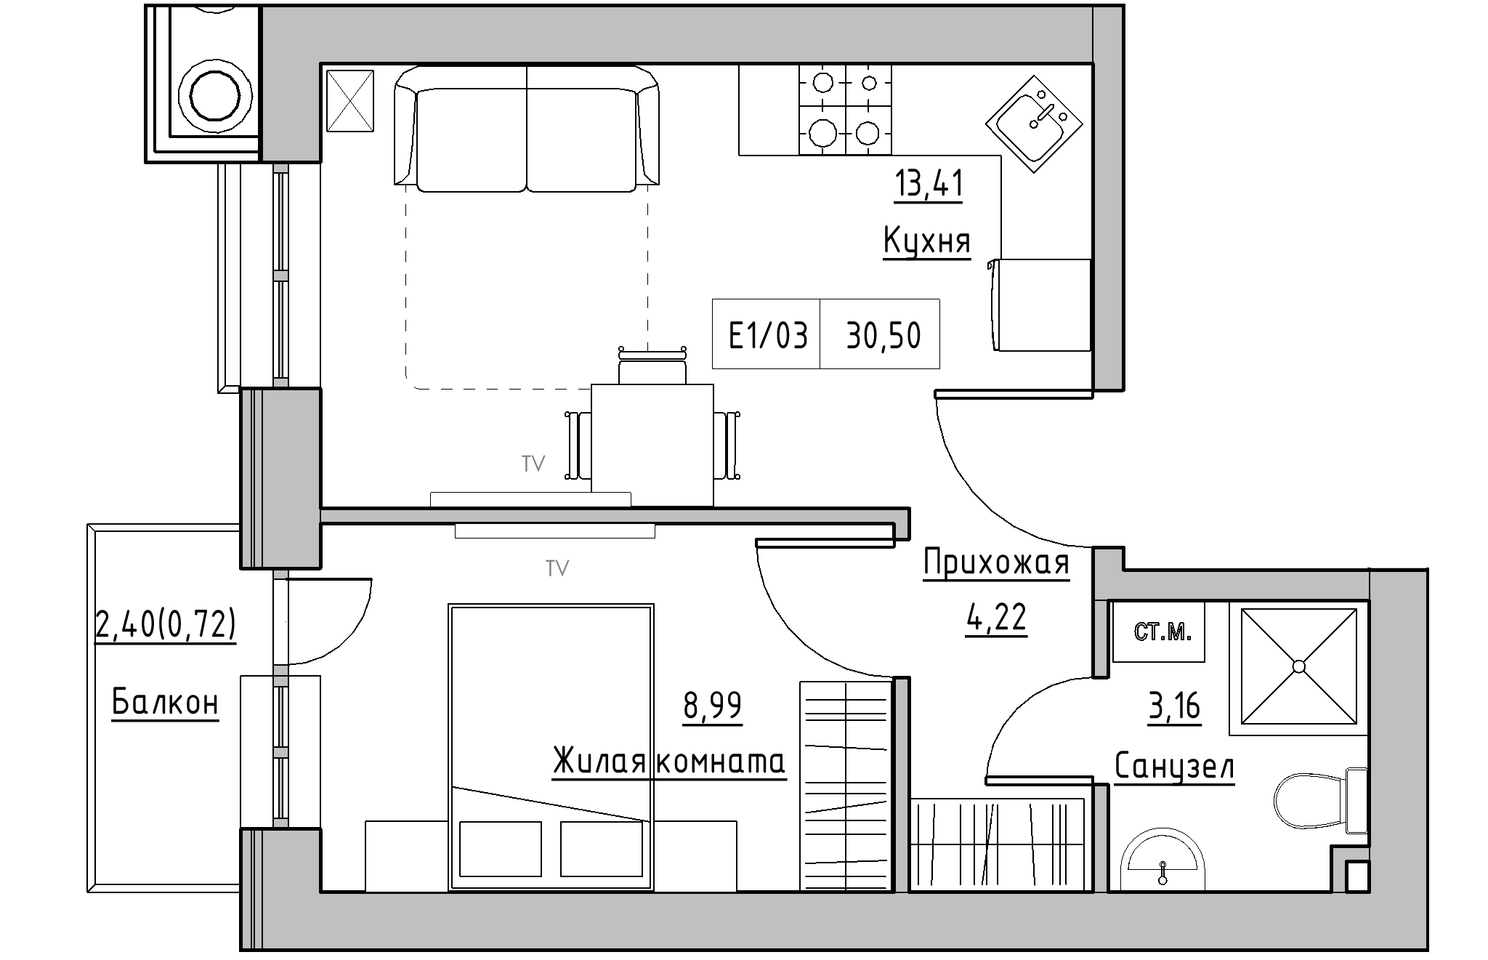 Планування 1-к квартира площею 30.5м2, KS-010-04/0012.